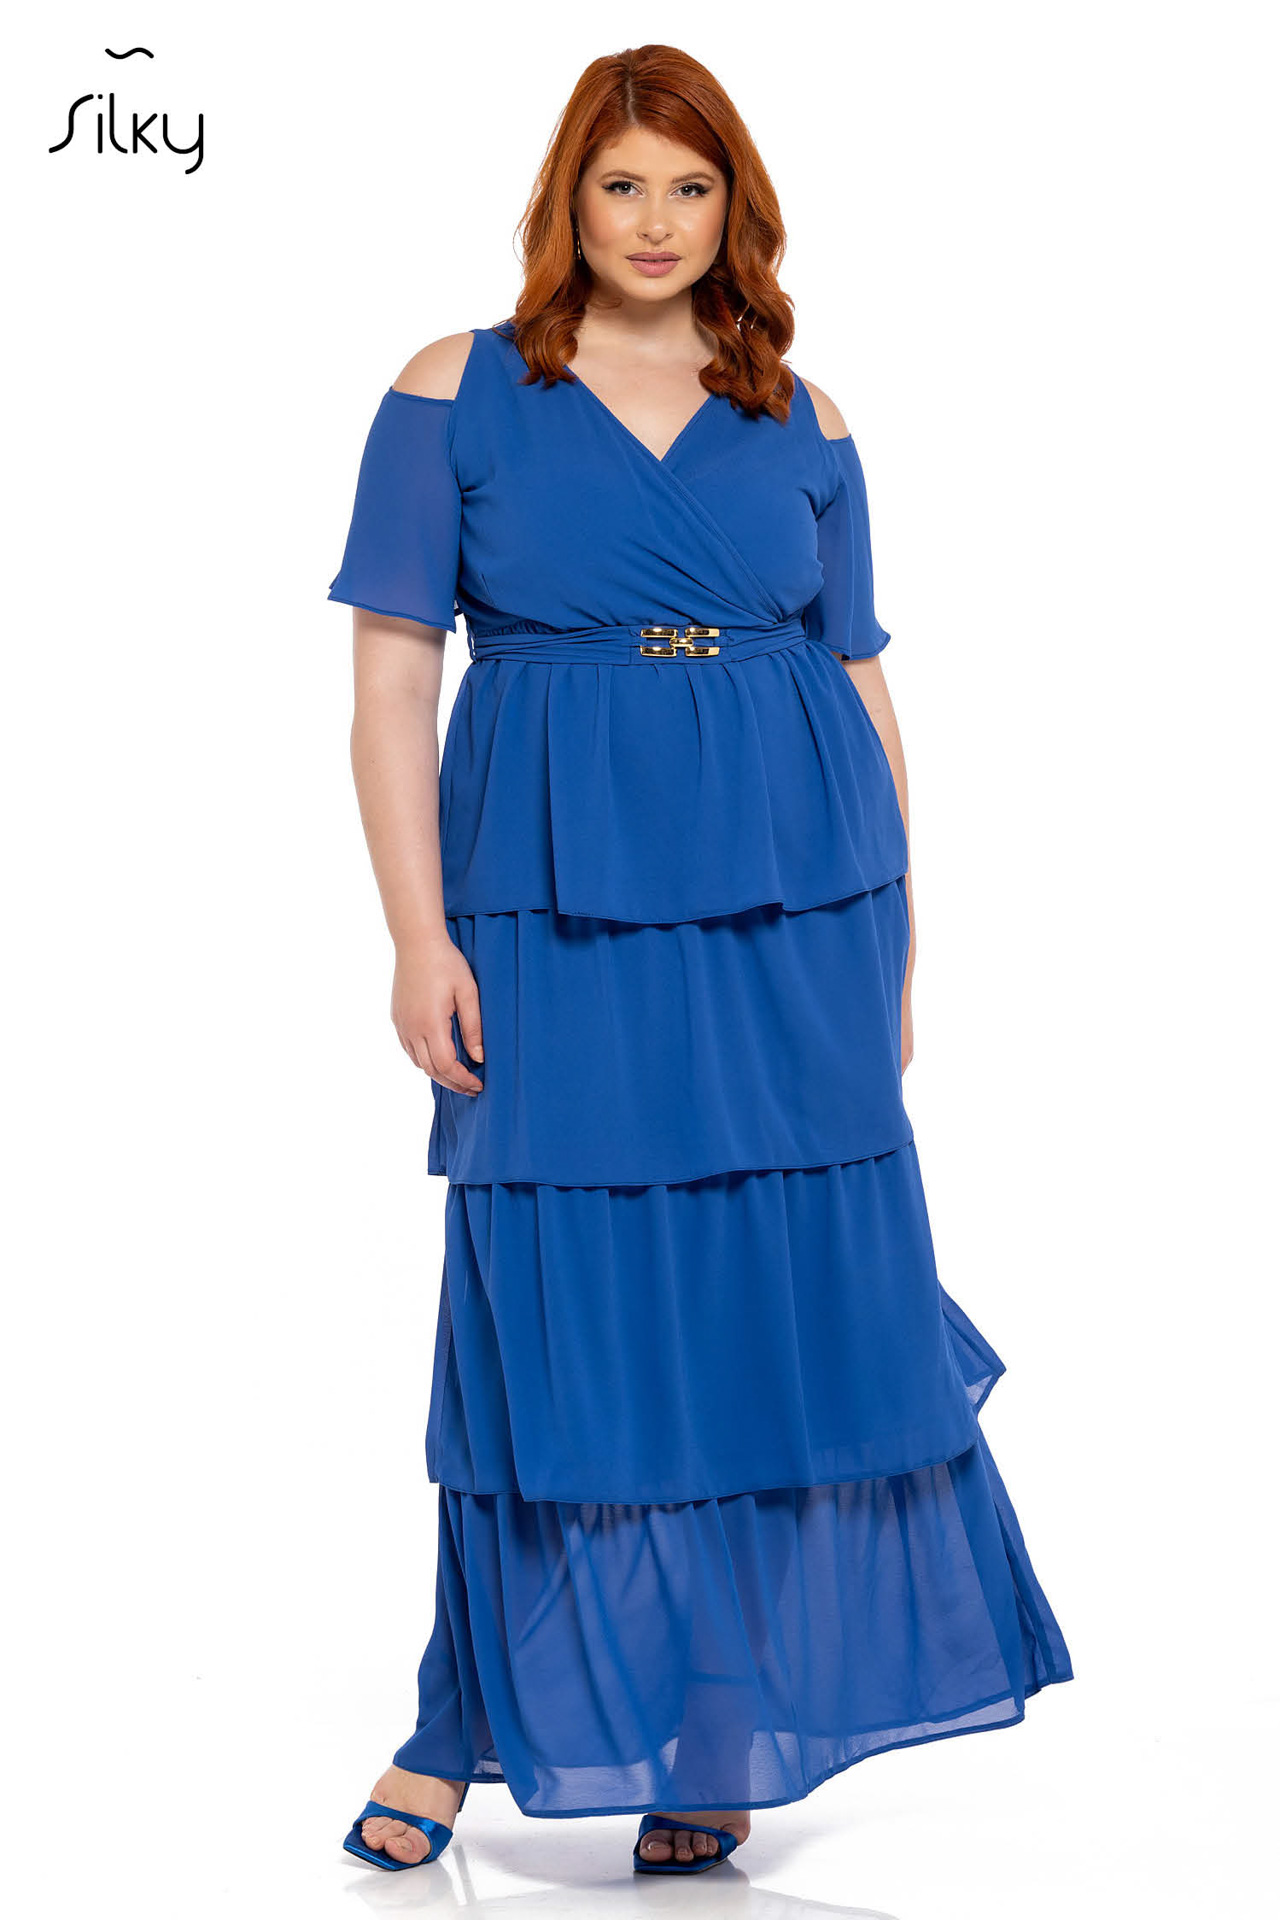 Φόρεμα μονόχρωμο maxi με βολάν ζορζέτα κωδ. S10005 μπροστινή όψη